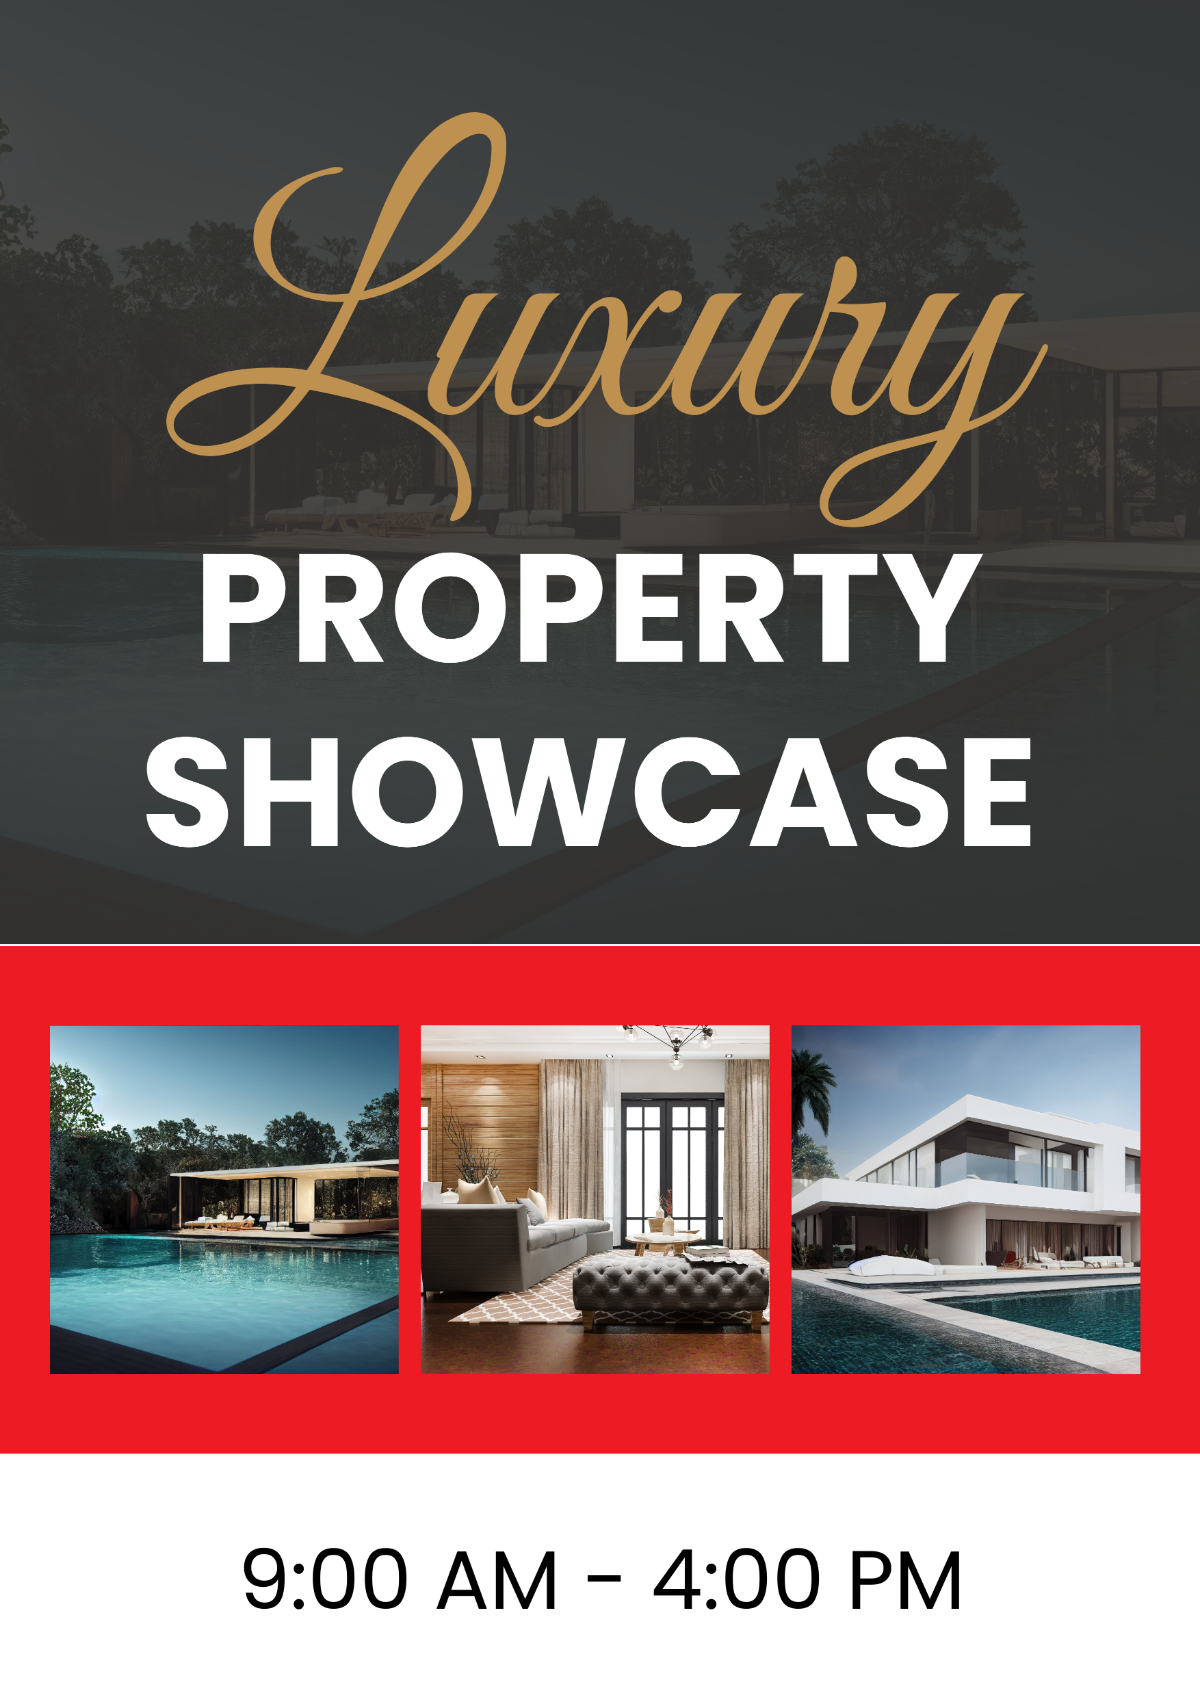 Luxury Property Showcase Signage